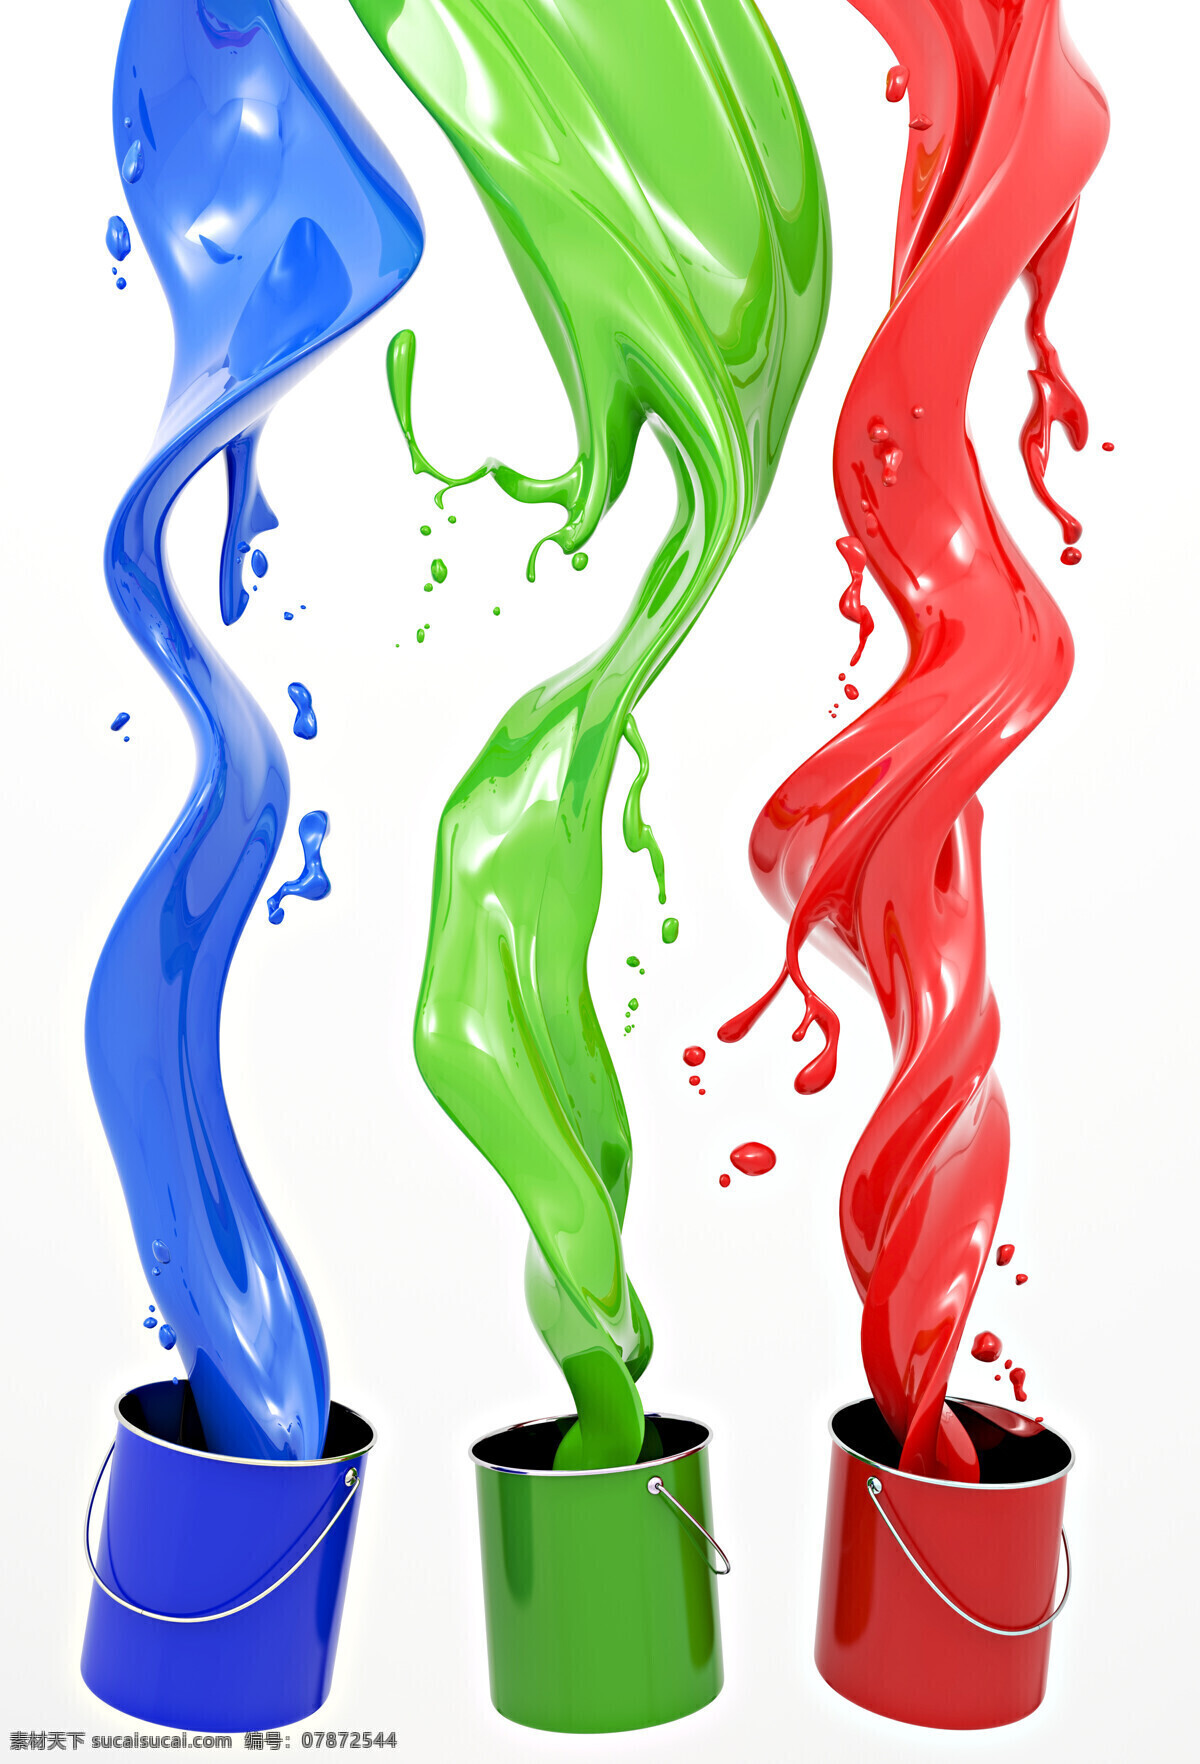 流向 桶 内 油漆 彩色 色彩 四种颜色 色彩样品 色谱 红色油漆 蓝色油漆 绿色油漆 动感 油漆桶 其他类别 生活百科 白色